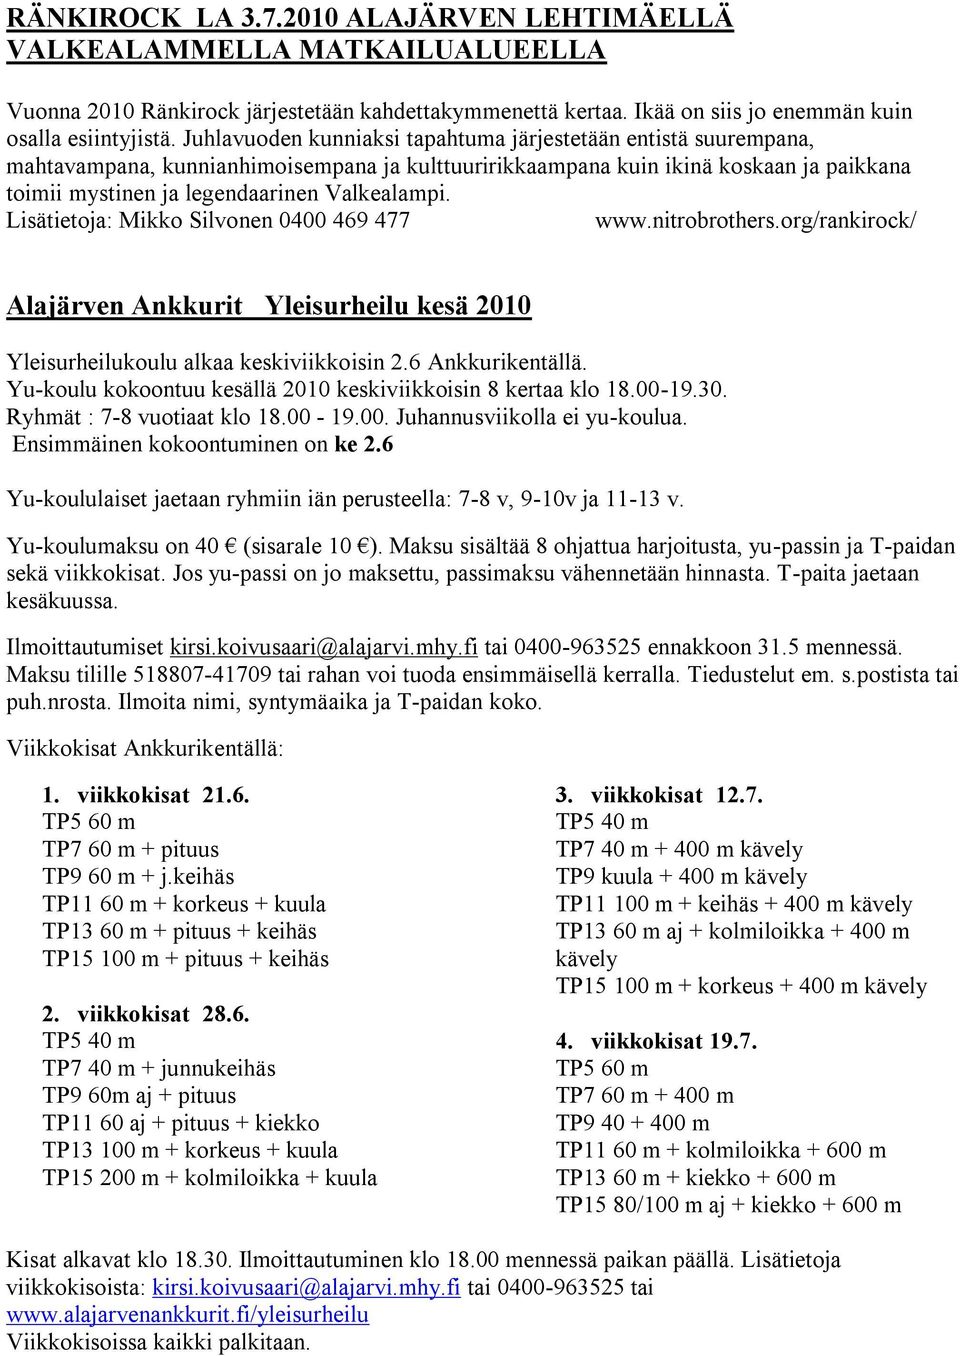 Lisätietoja: Mikko Silvonen 0400 469 477 www.nitrobrothers.org/rankirock/ Alajärven Ankkurit Yleisurheilu kesä 2010 Yleisurheilukoulu alkaa keskiviikkoisin 2.6 Ankkurikentällä.